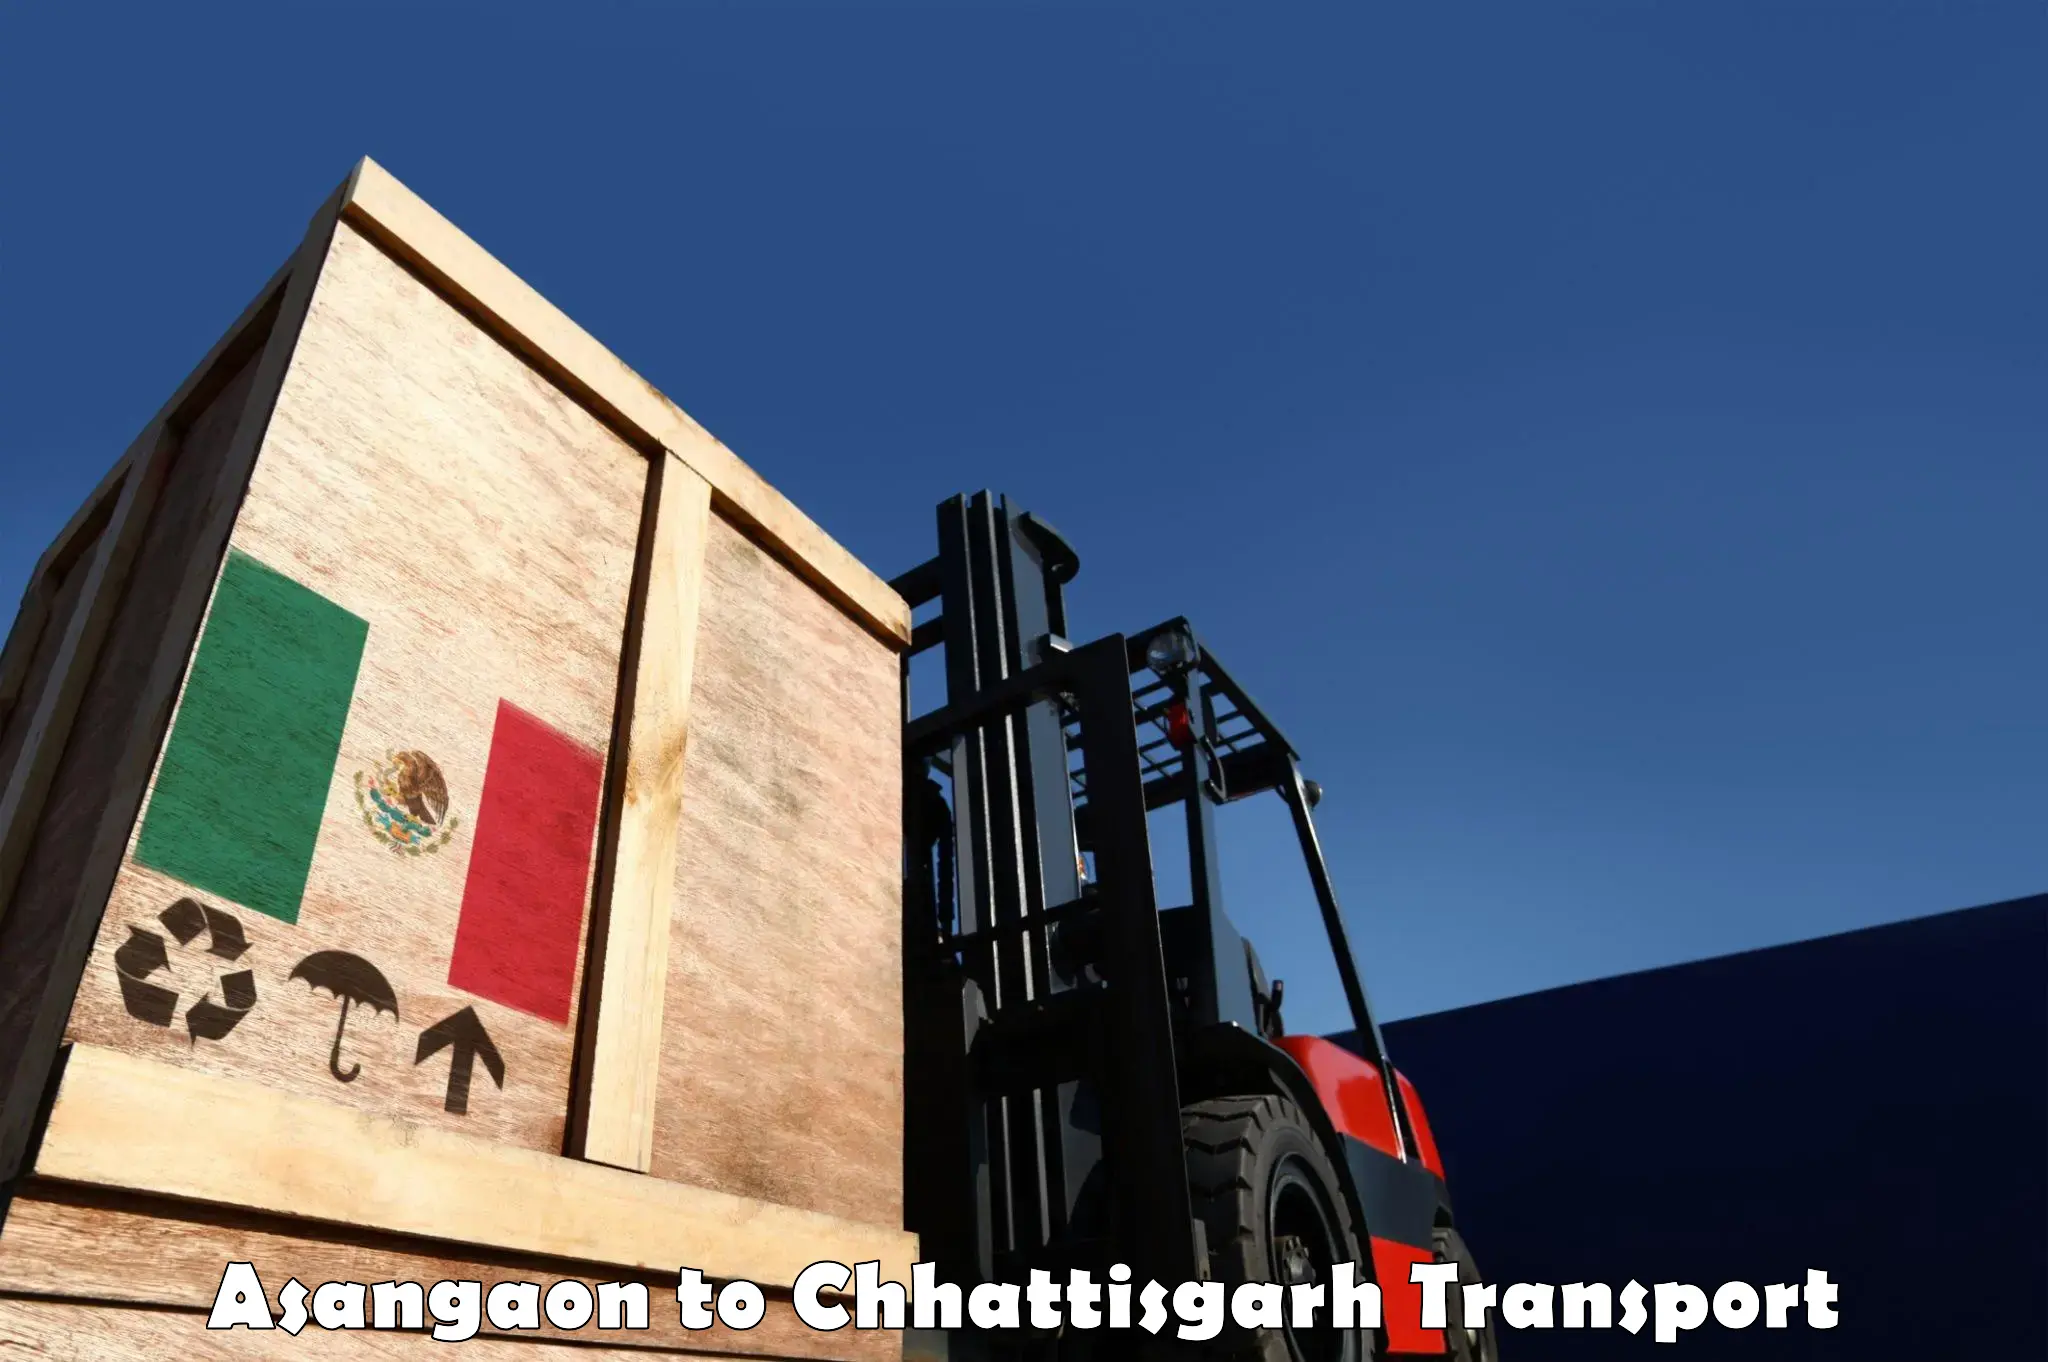 Nearest transport service Asangaon to Charama